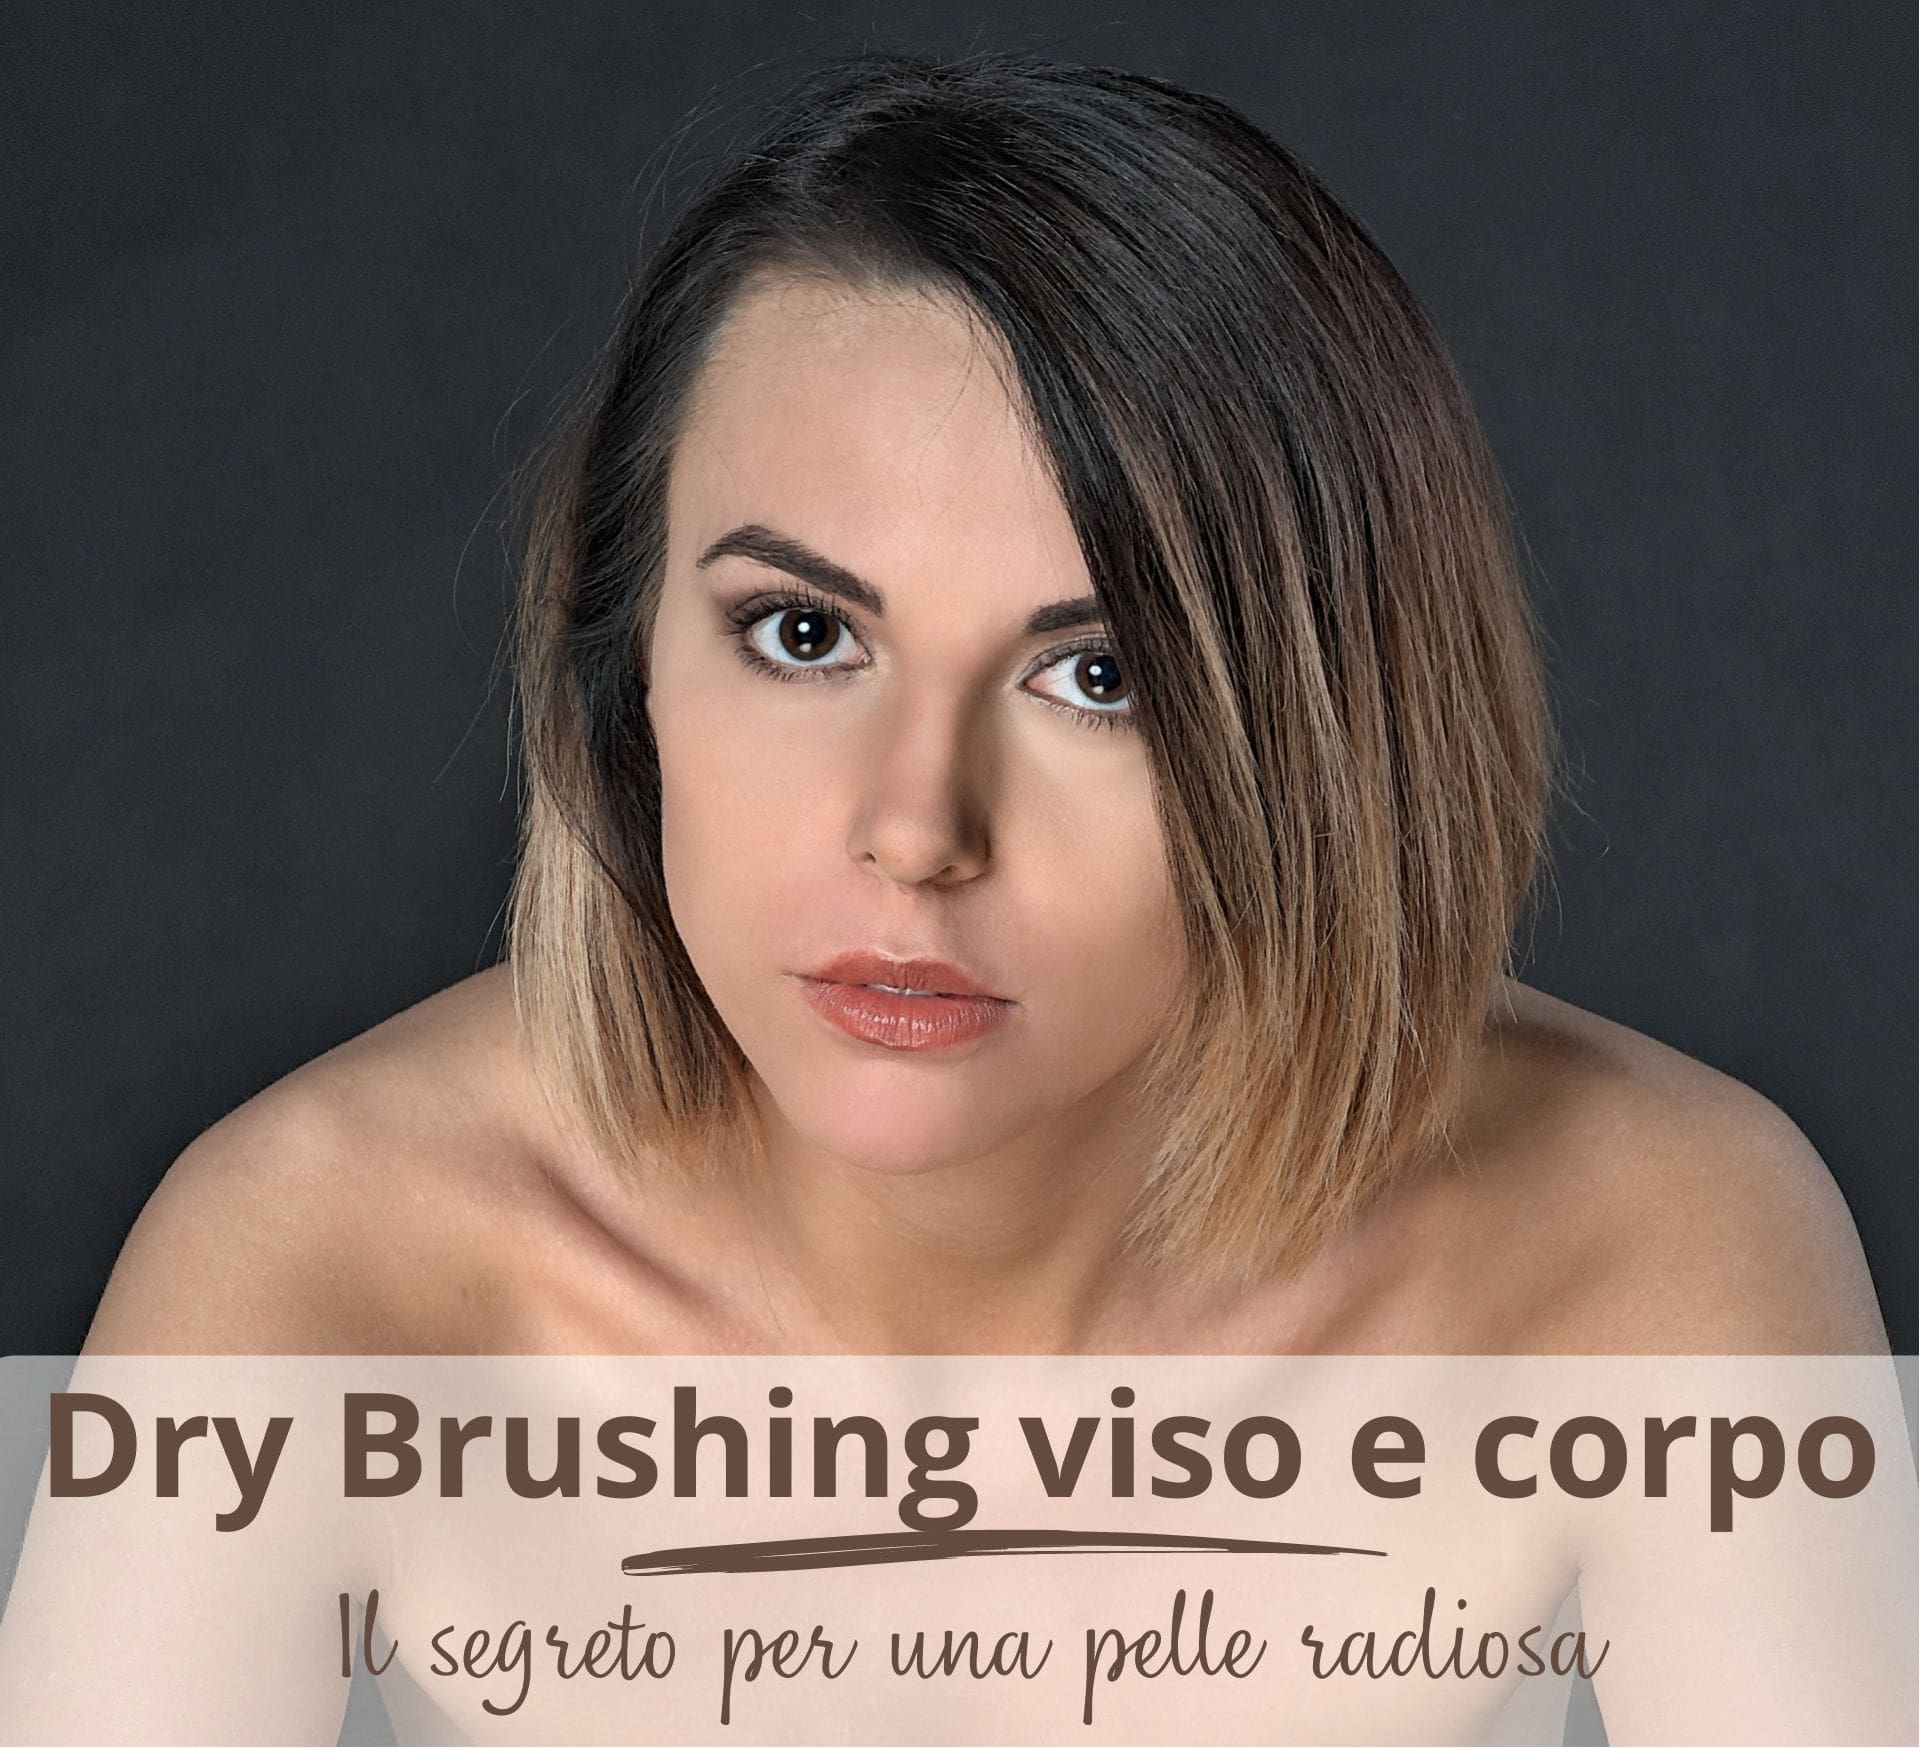 Dry Brushing viso e corpo, la spazzolatura a secco per avere una pelle radiosa